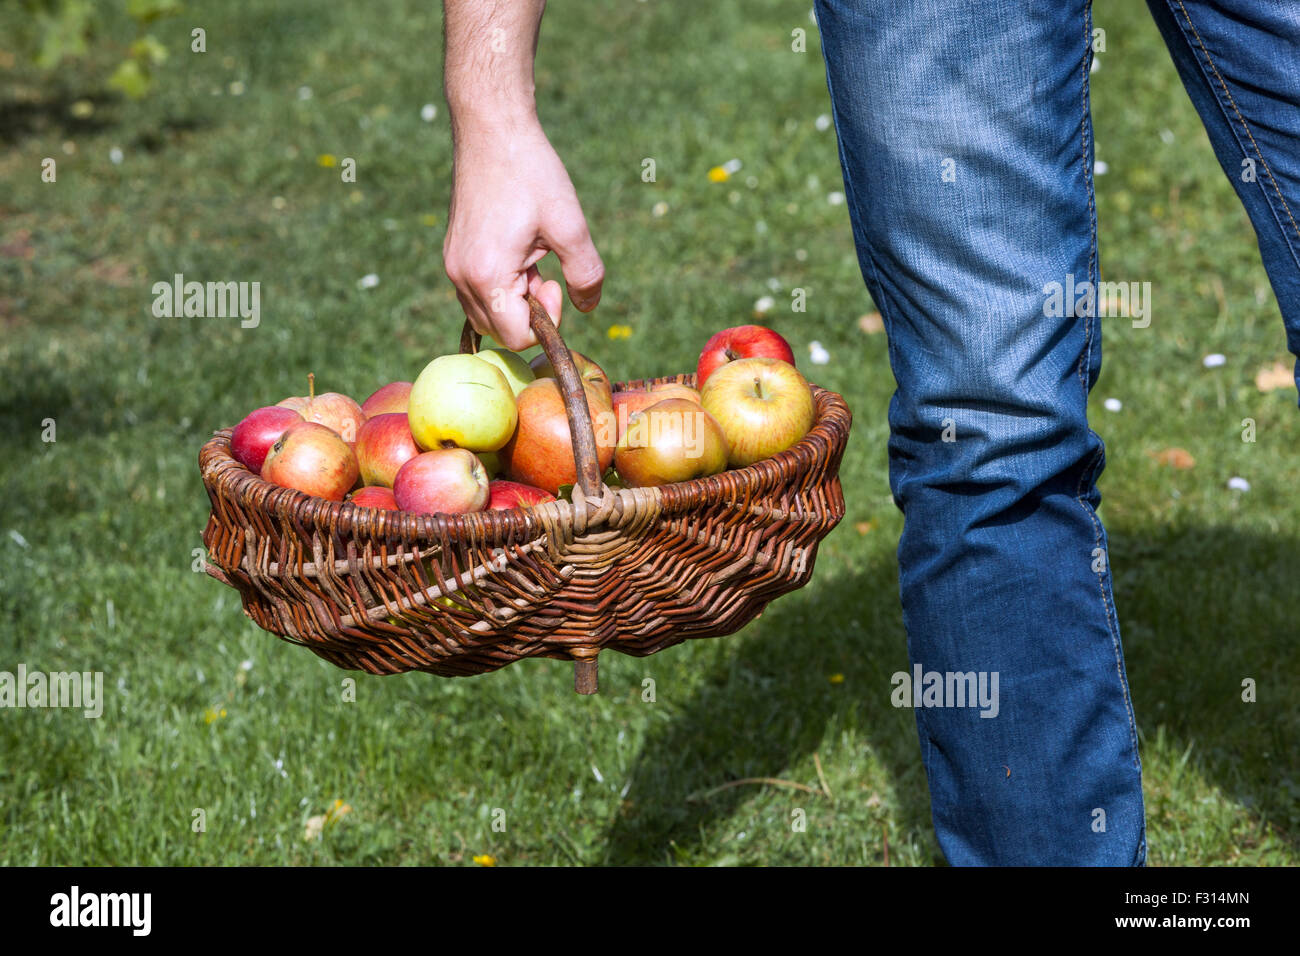 Un homme porte les pommes dans le panier, panier en osier, la récolte d'automne les fruits cueillis Banque D'Images